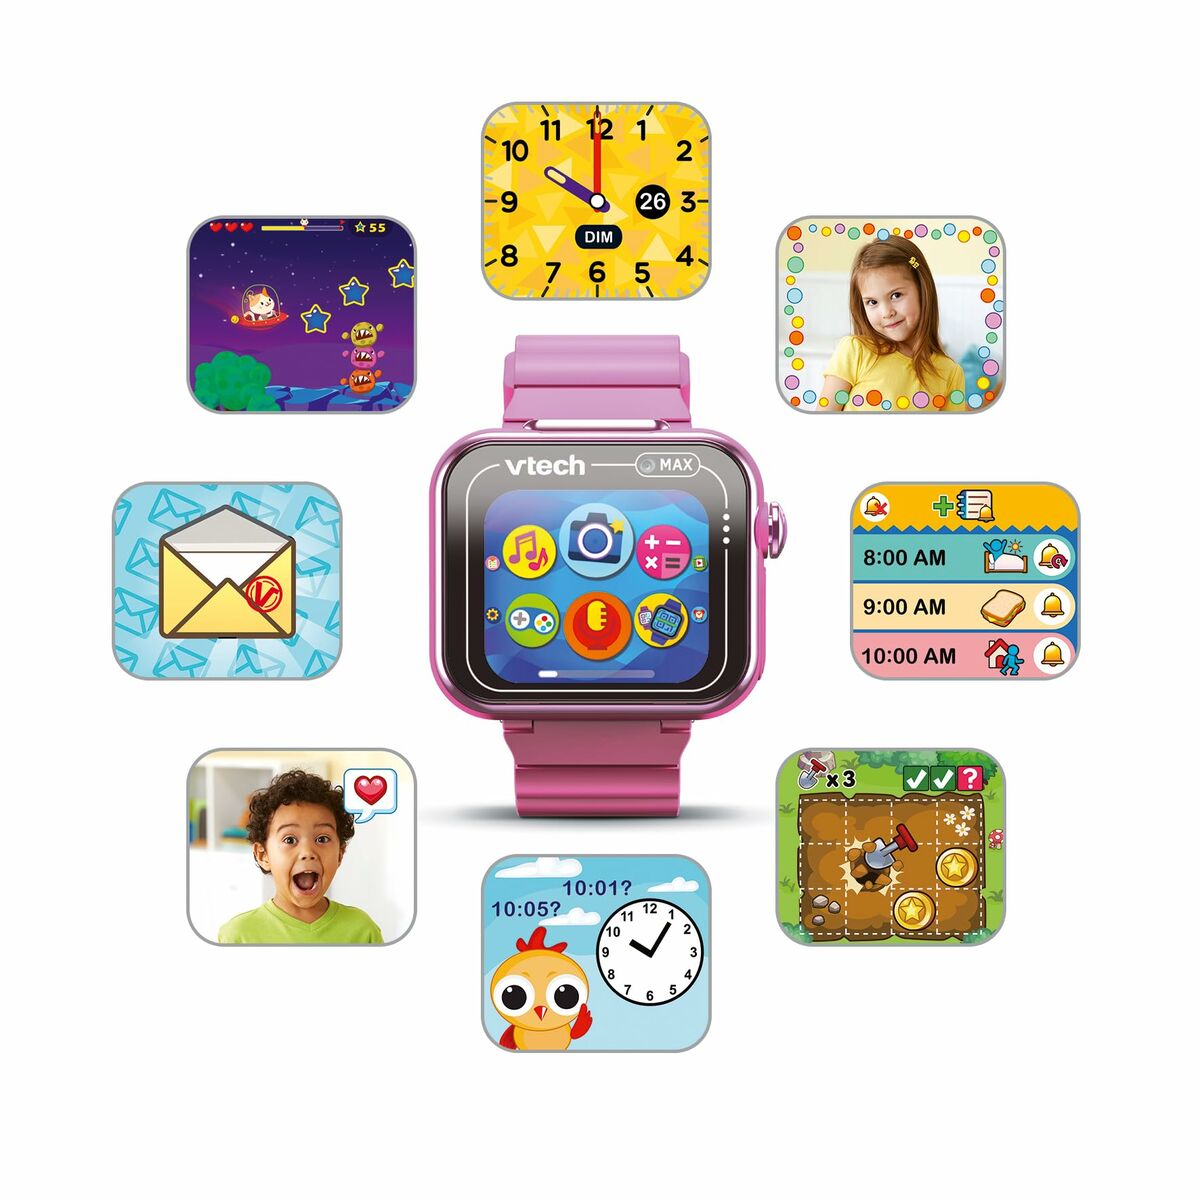 Barnklocka Vtech Kidizoom Smartwatch Max 256 MB Interaktivt Rosa-Leksaker och spel, Elektroniska leksaker-Vtech-peaceofhome.se